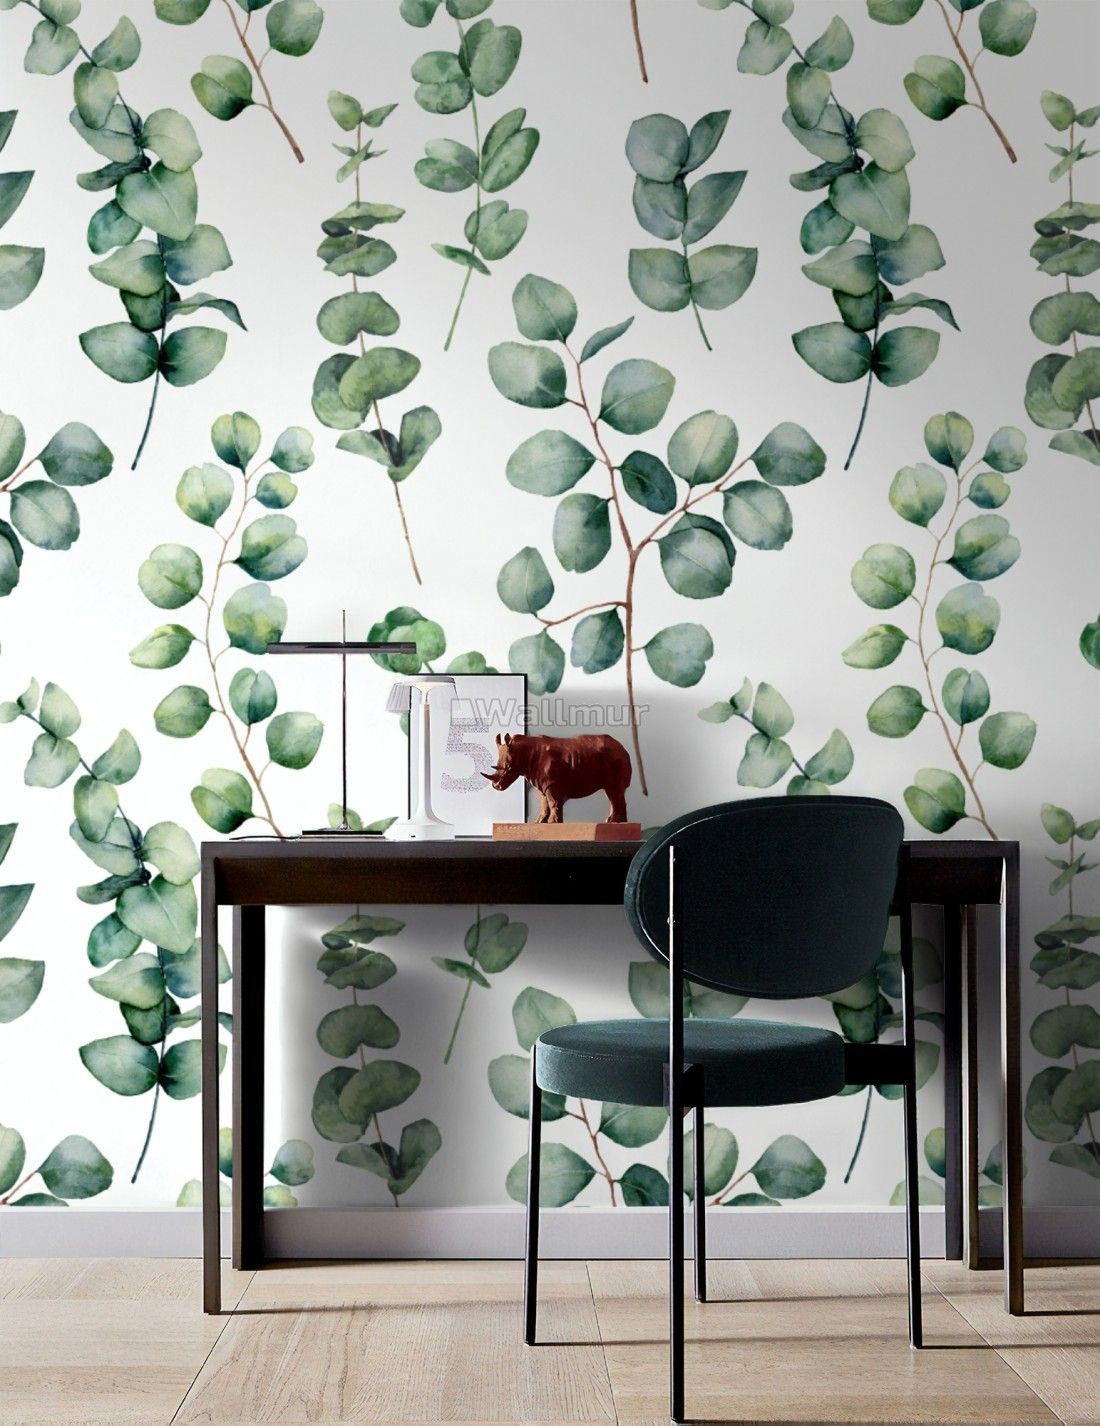 Watercolor Eucalyptus Leaf Wallpaper Mural – Wallpaper • Wallmur® Within Latest Eucalyptus Leaves Wall Art (View 11 of 20)